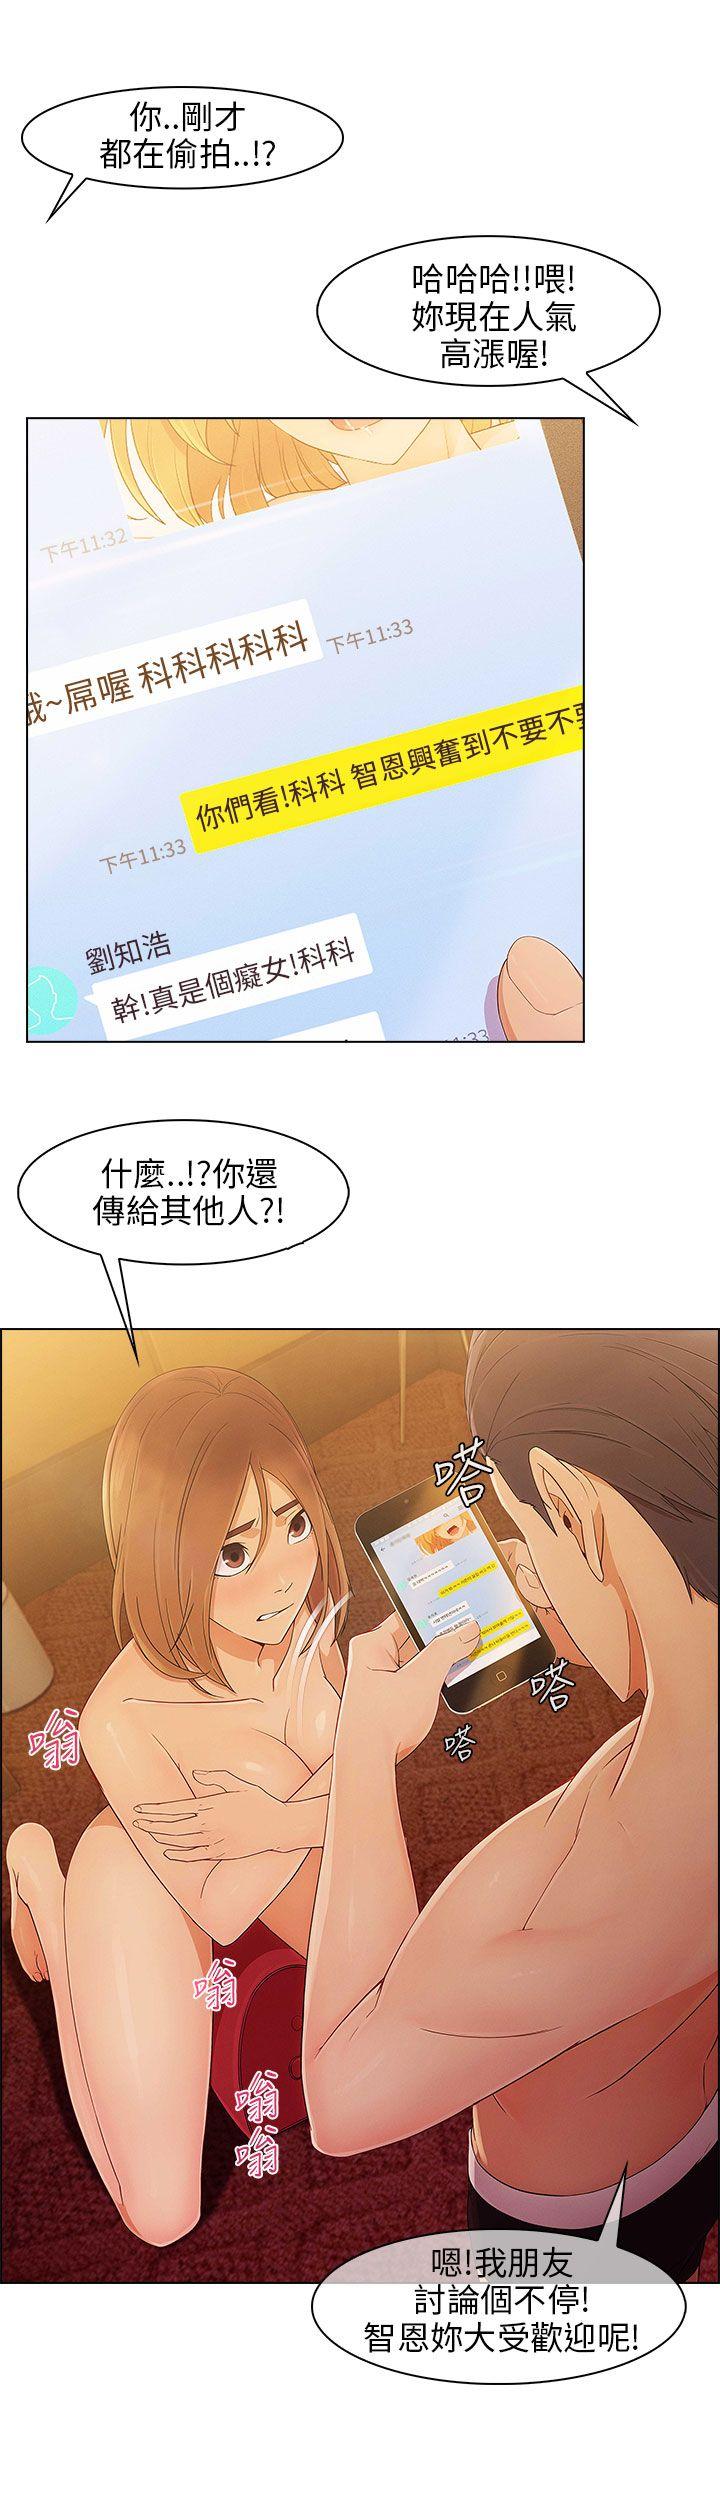 《湘亚:积极追求攻势》漫画 第10话